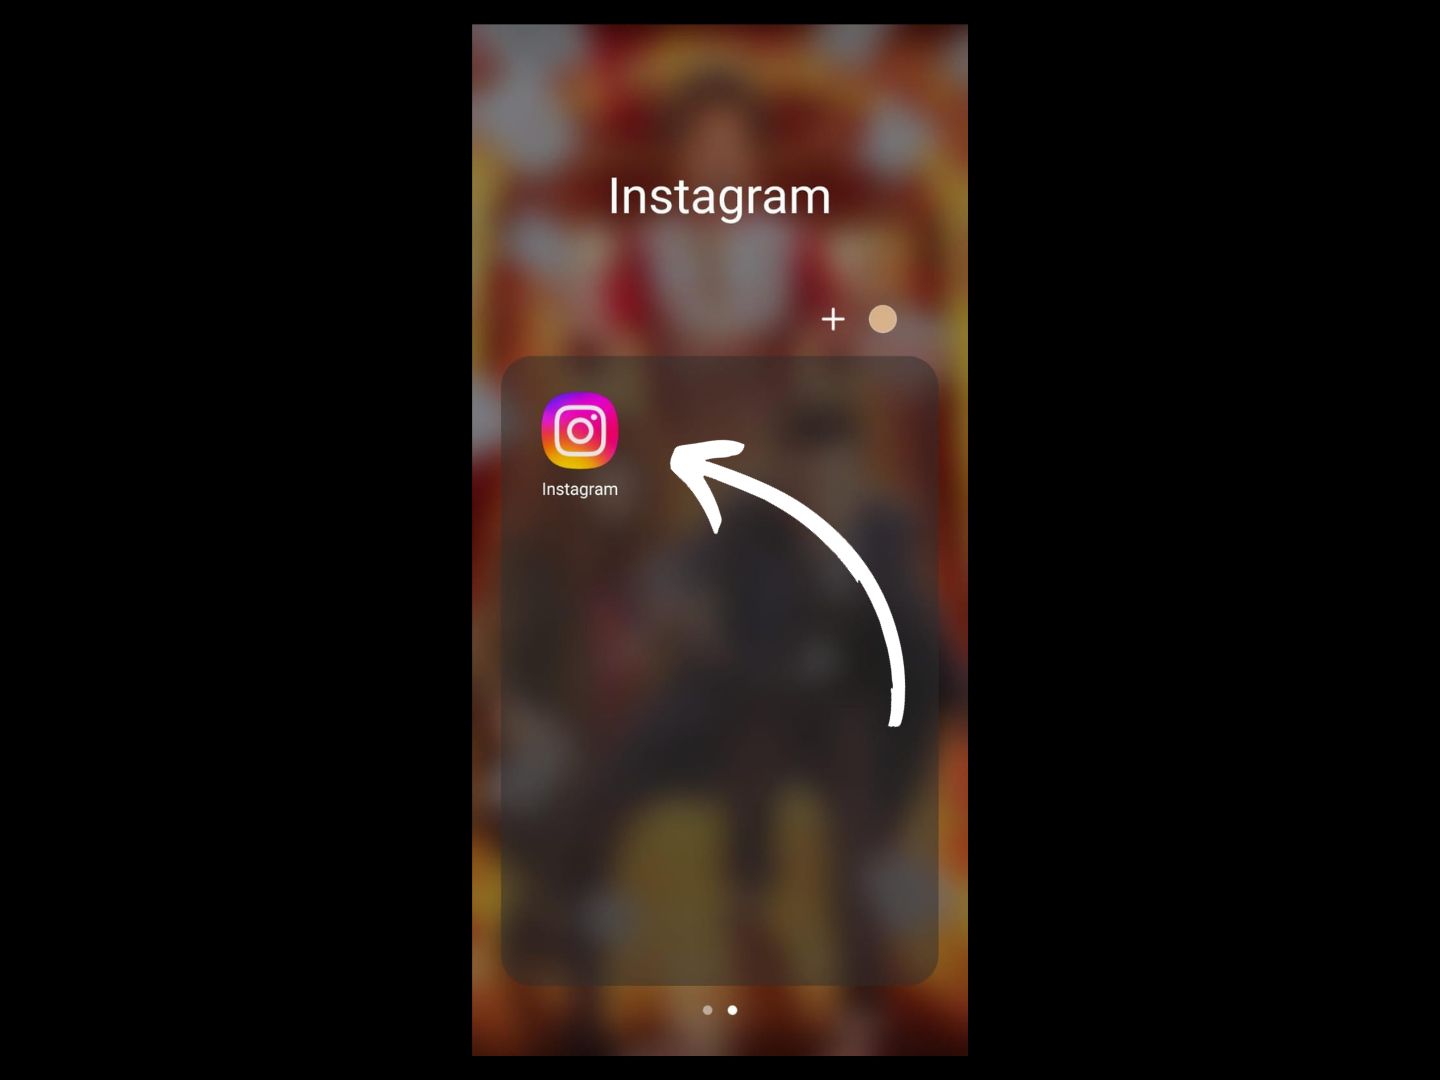 Imagem mostra seta apontando para aplicativo do Instagram